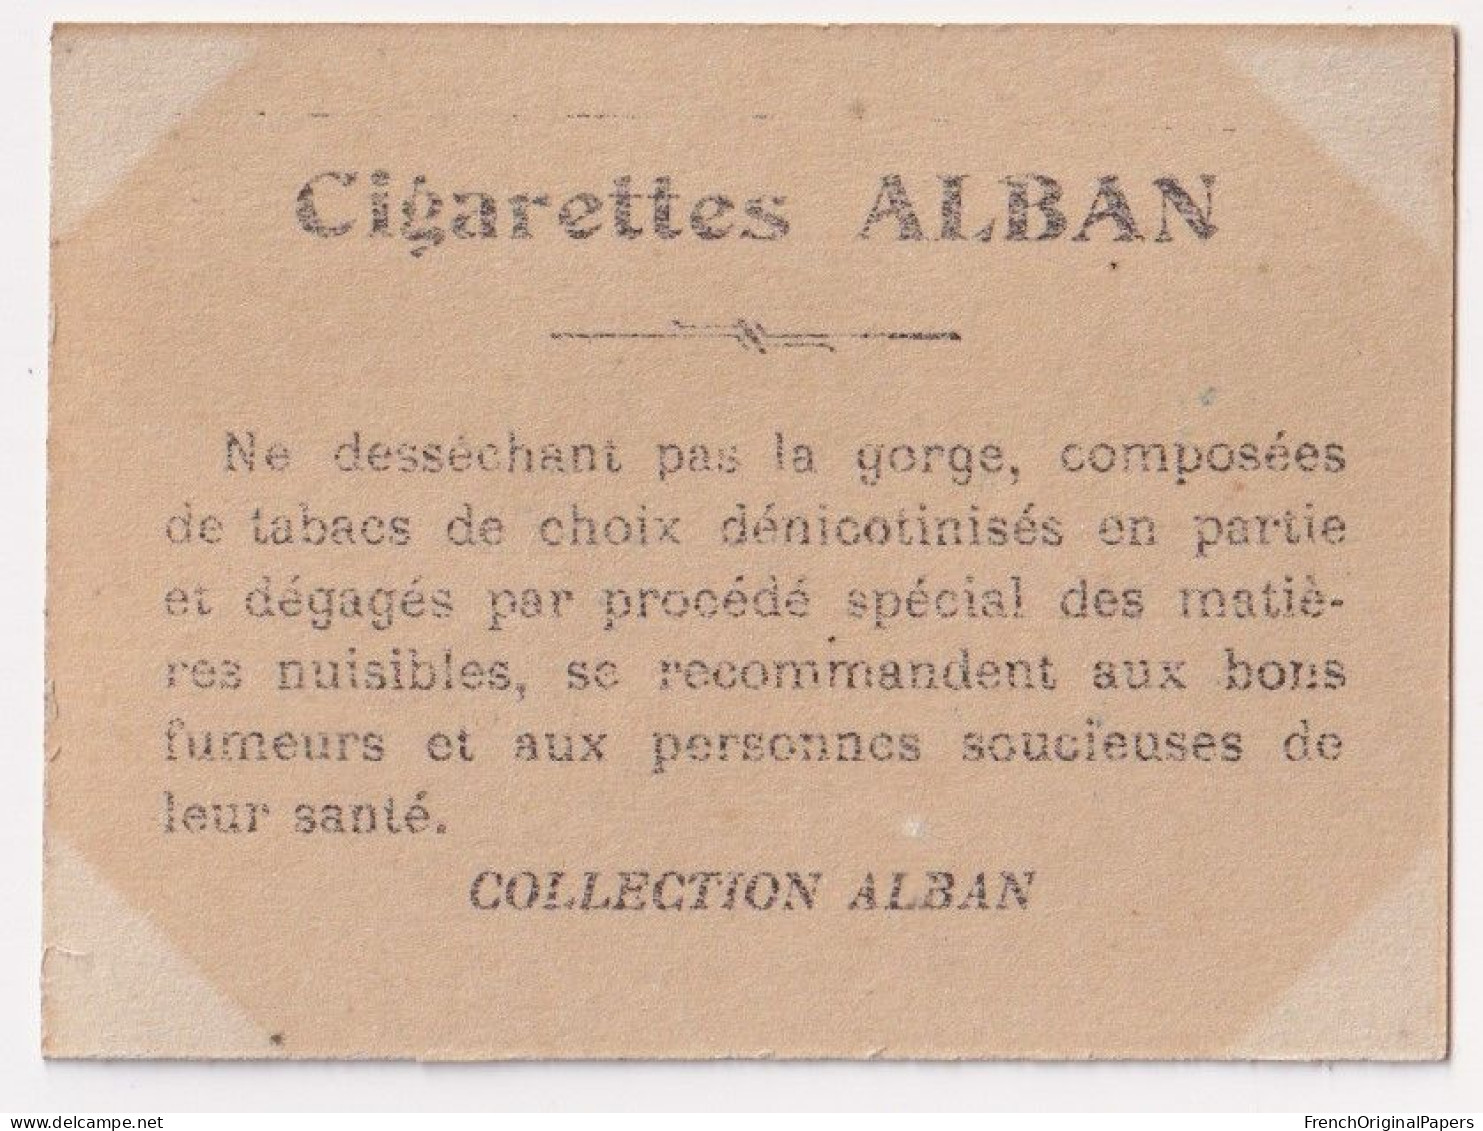 Tolédo - Cigarettes L. Alban 1910 Photo Femme Sexy Pin-up Vintage Artiste Cabaret Paris Bône Danse Danseuse A62-18 - Other Brands